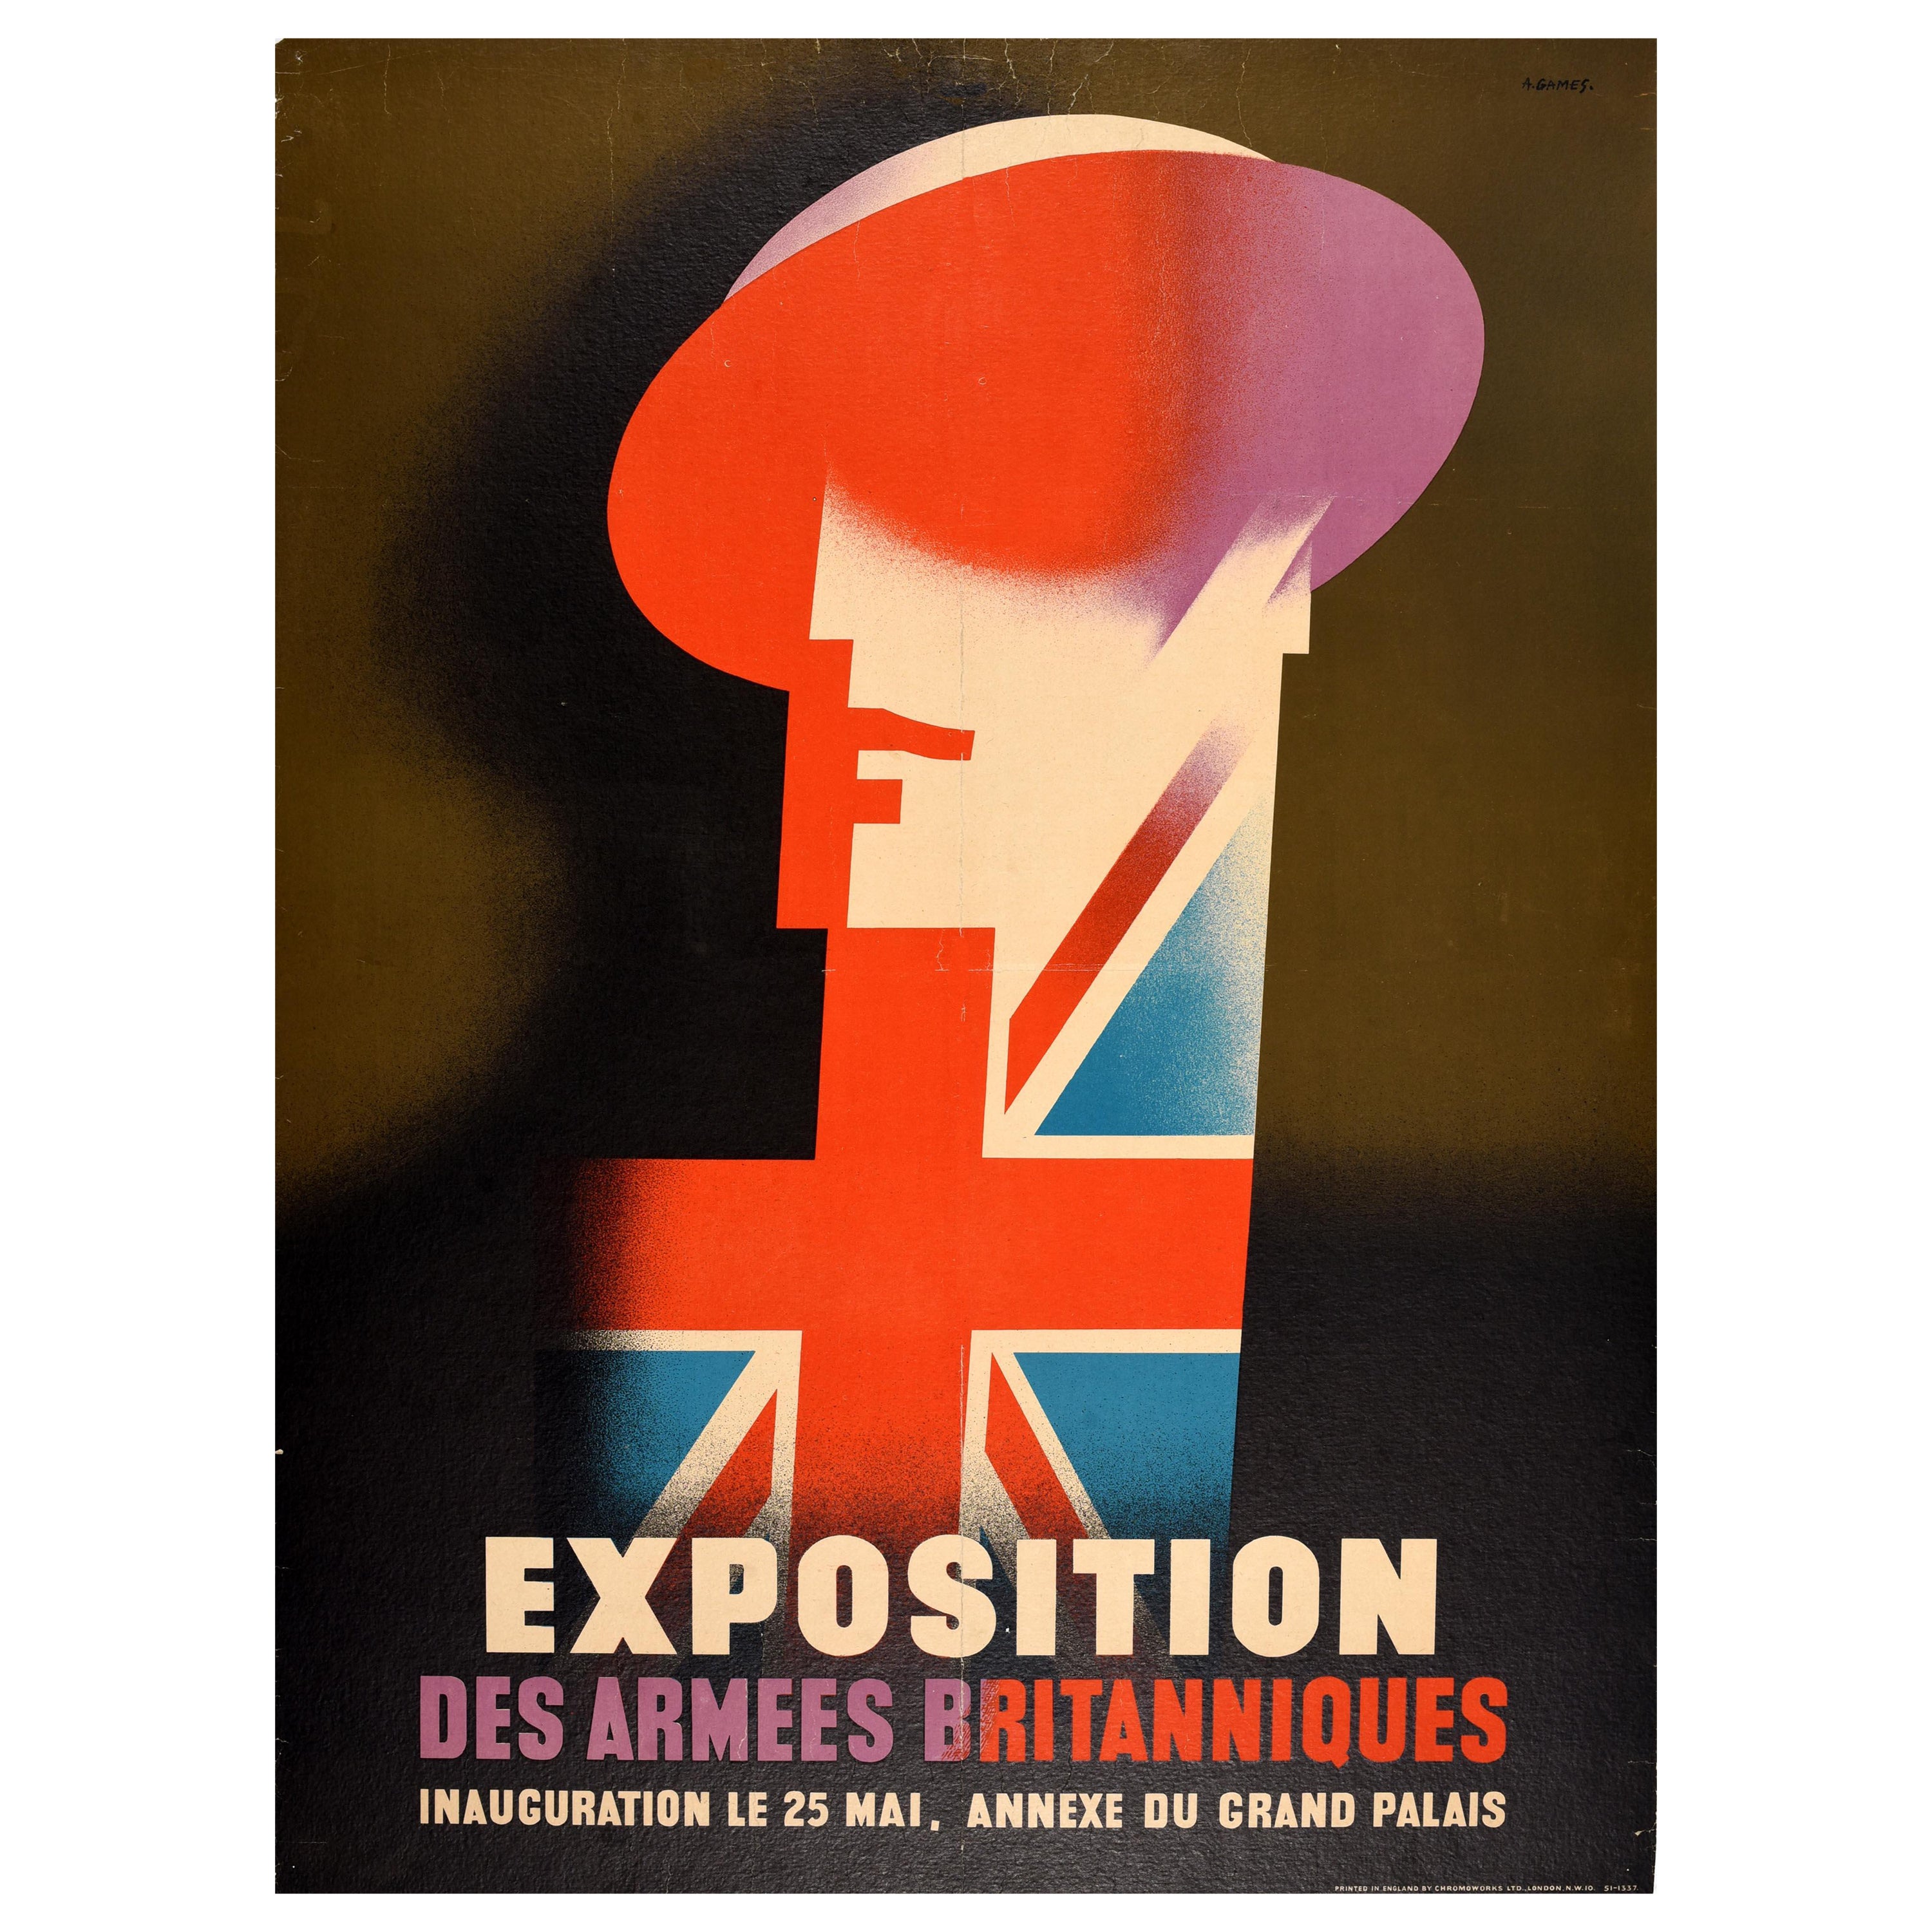 Original Vintage Cartel Publicitario Exposición Ejército Británico Abram Games Soldado en venta